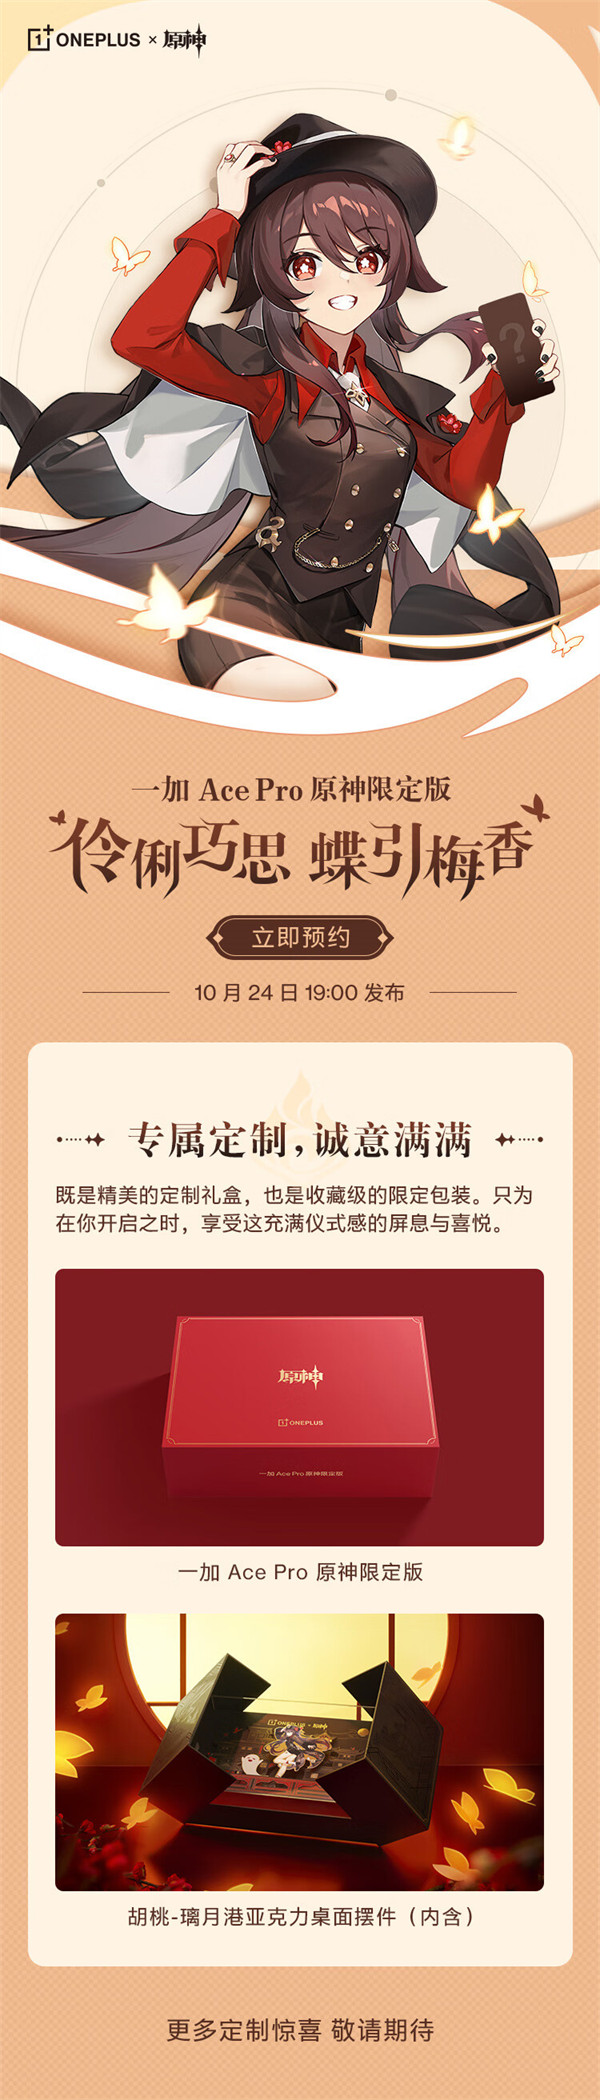 一加 Ace Pro 原神限定版发布会今晚 19:00 召开：外观公布：“胡桃”图案亮眼